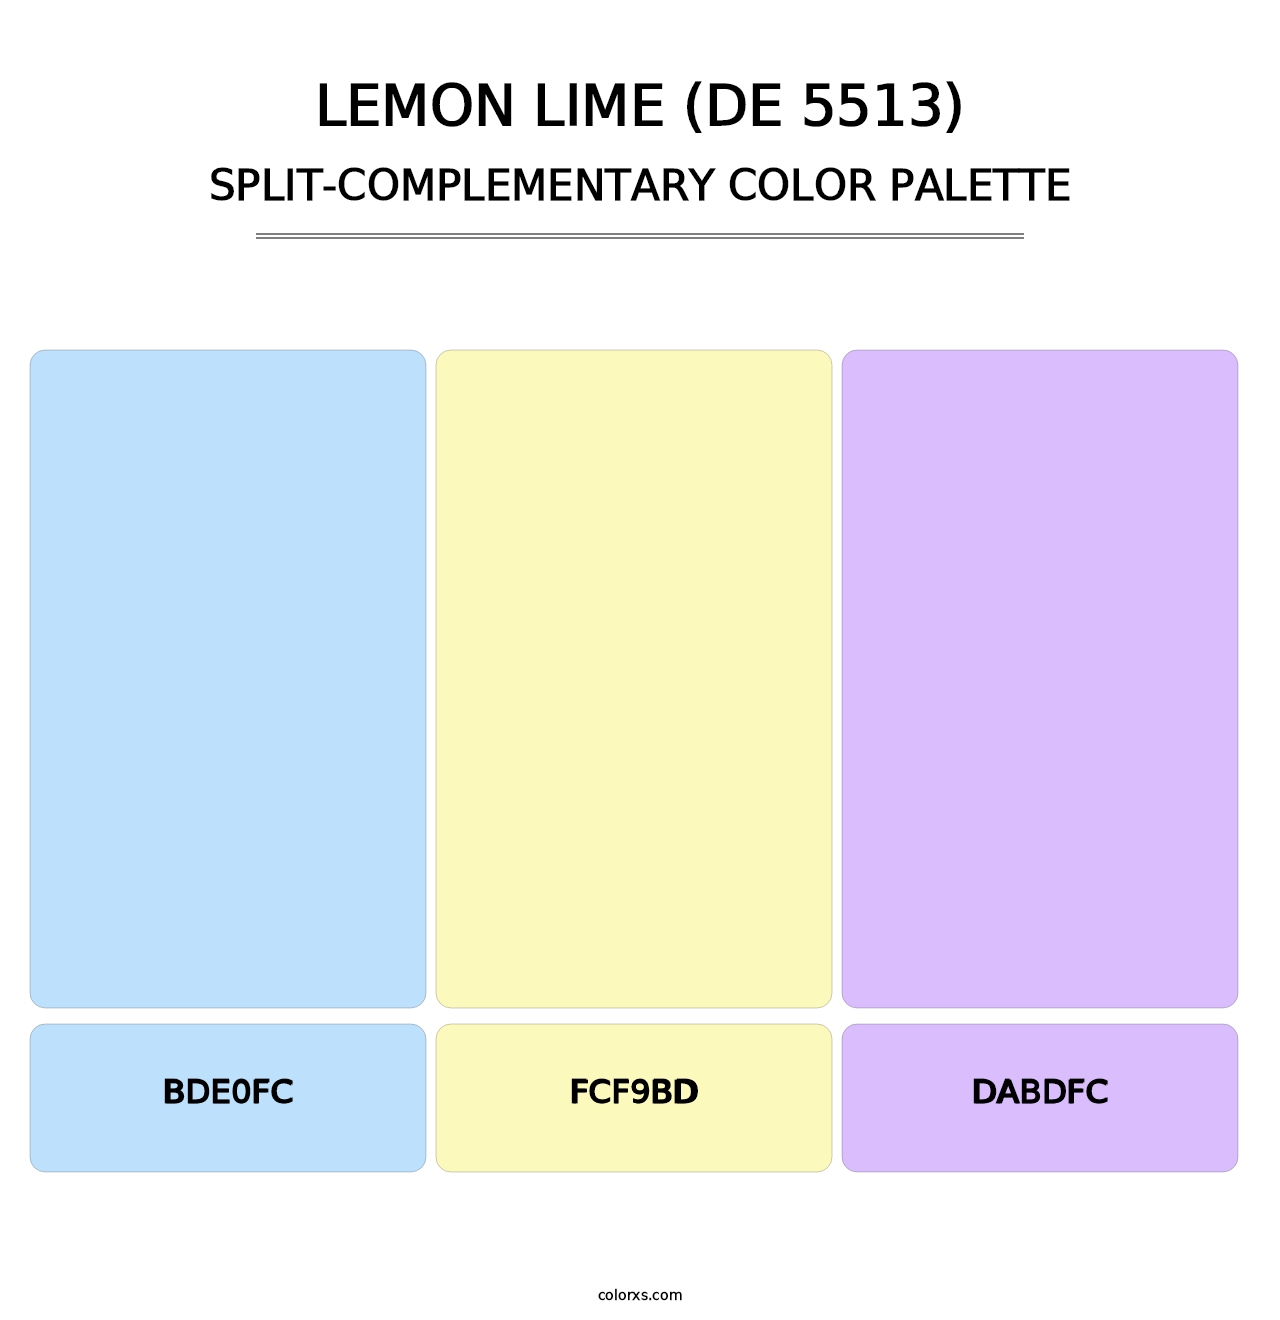 Lemon Lime (DE 5513) - Split-Complementary Color Palette